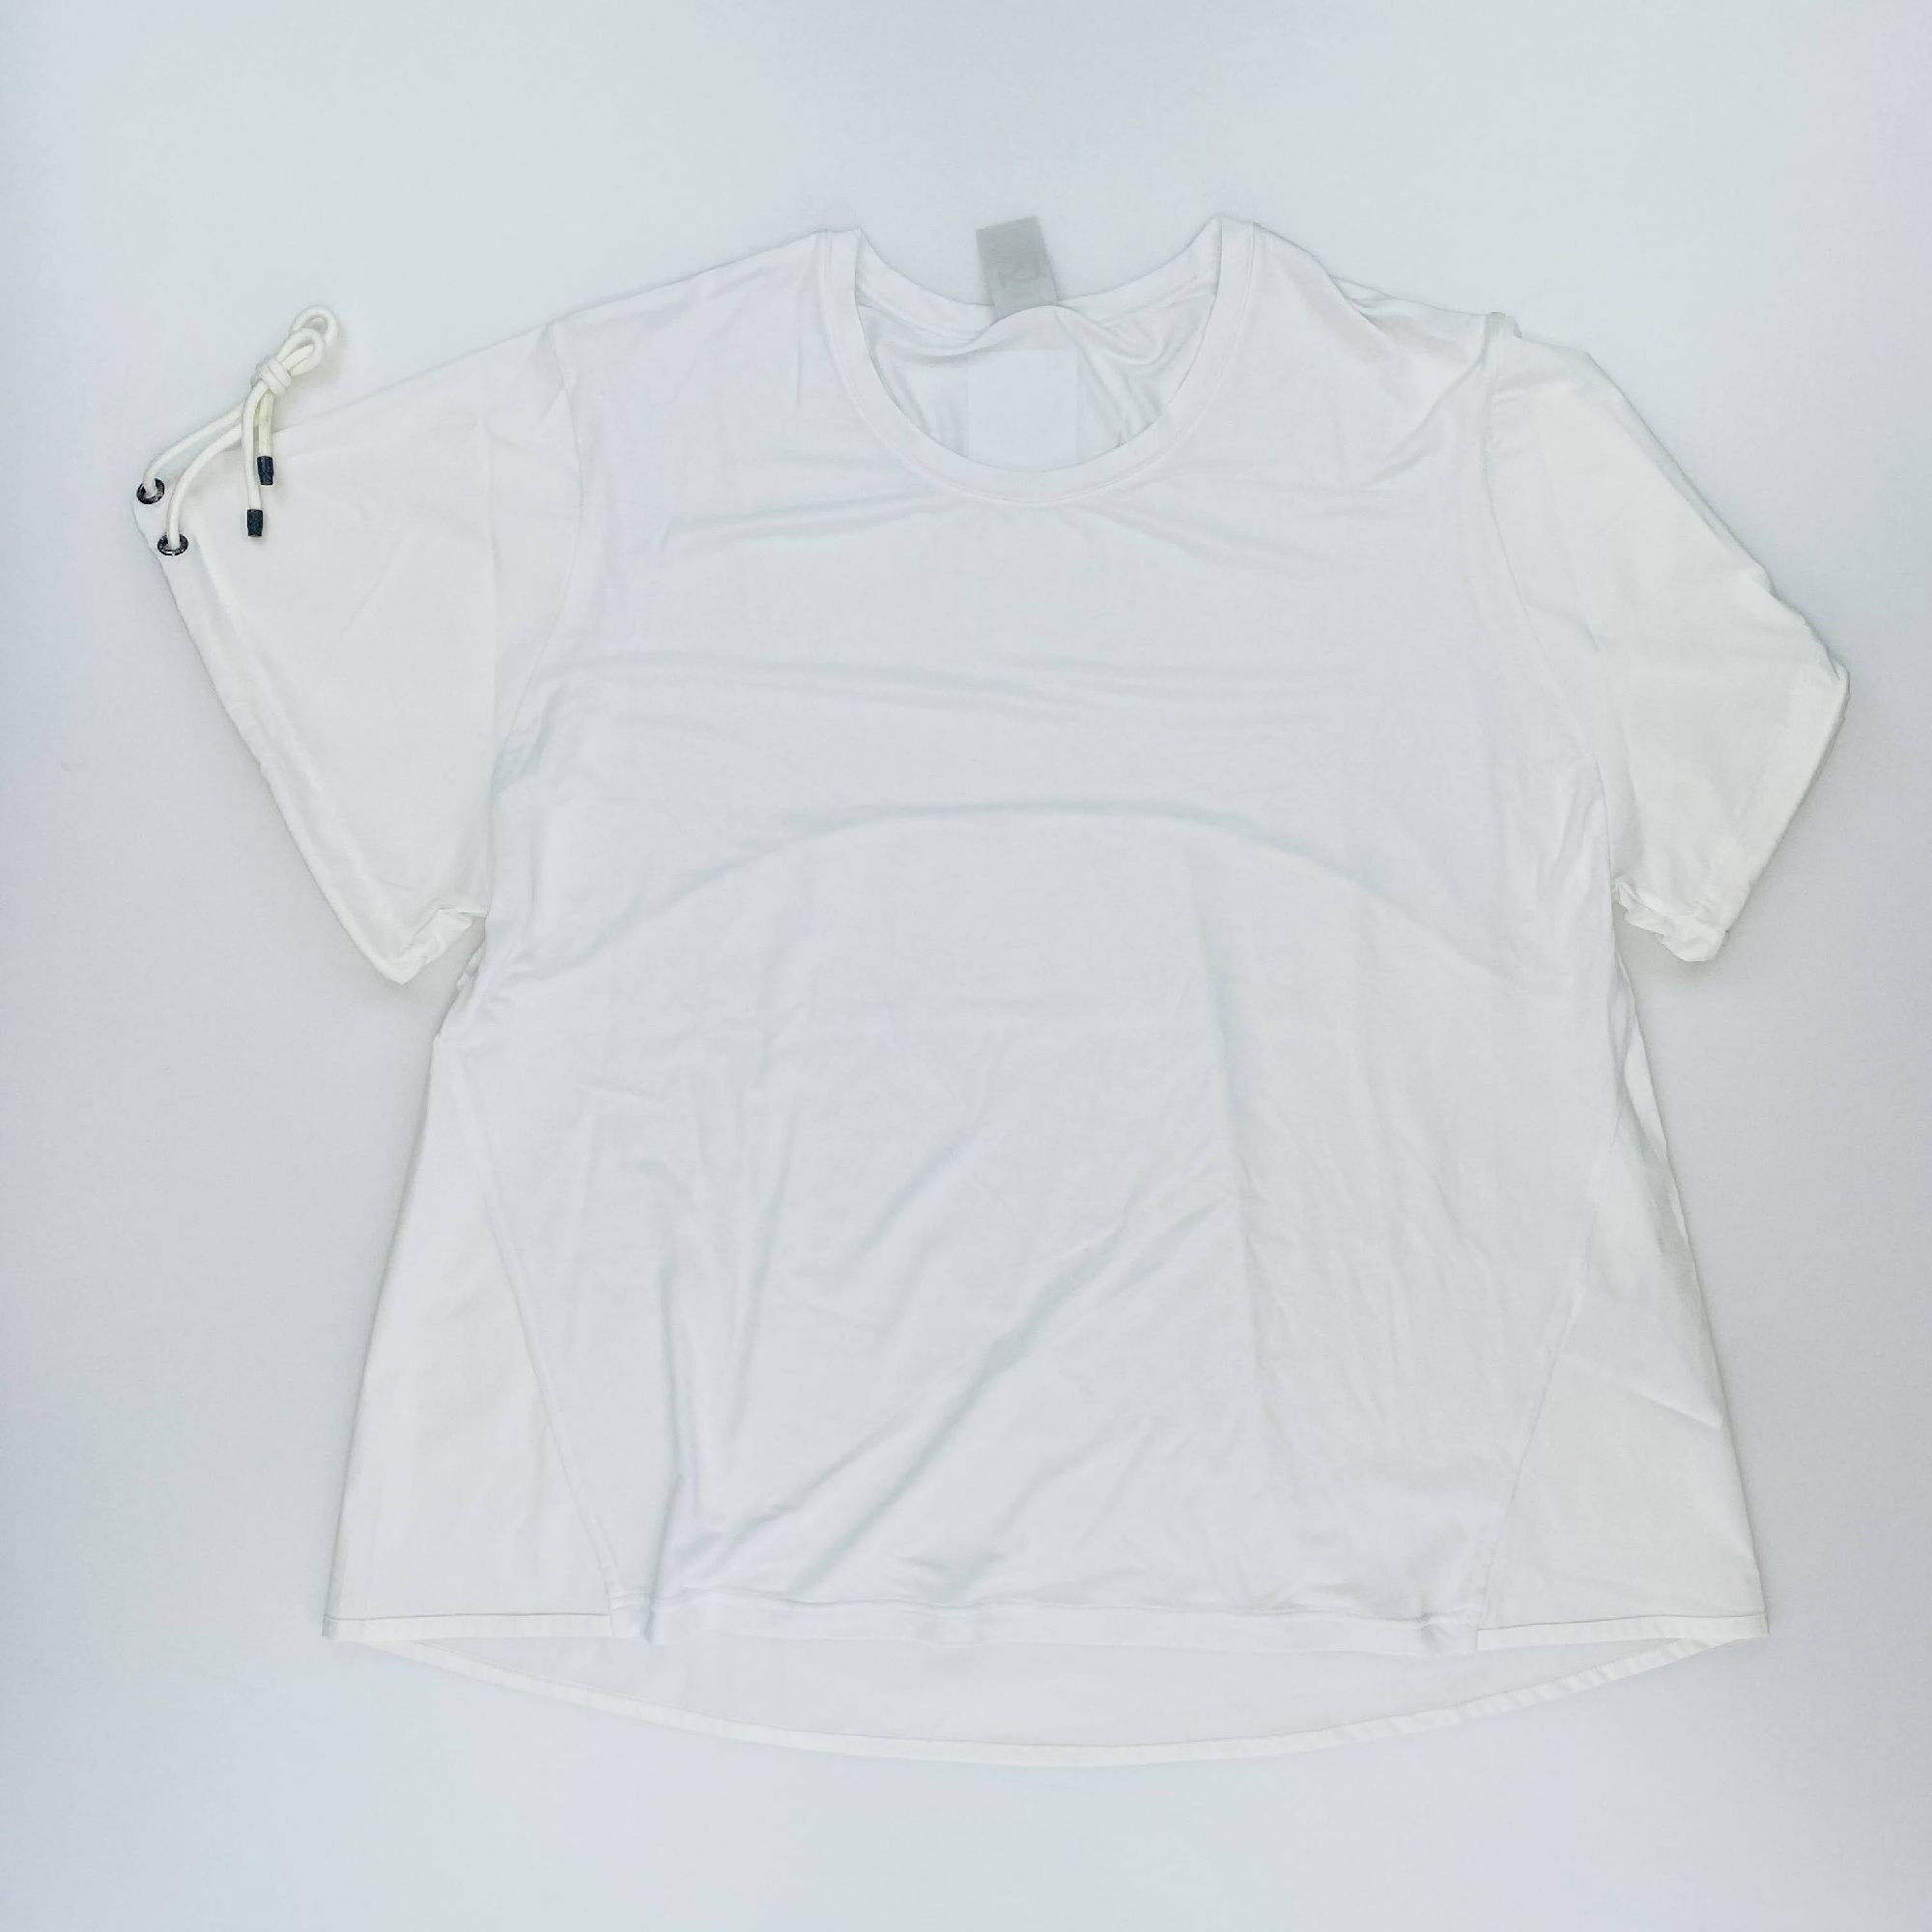 Kari Traa Voss Tee - Segunda Mano Camiseta - Mujer - Blanco - M | Hardloop